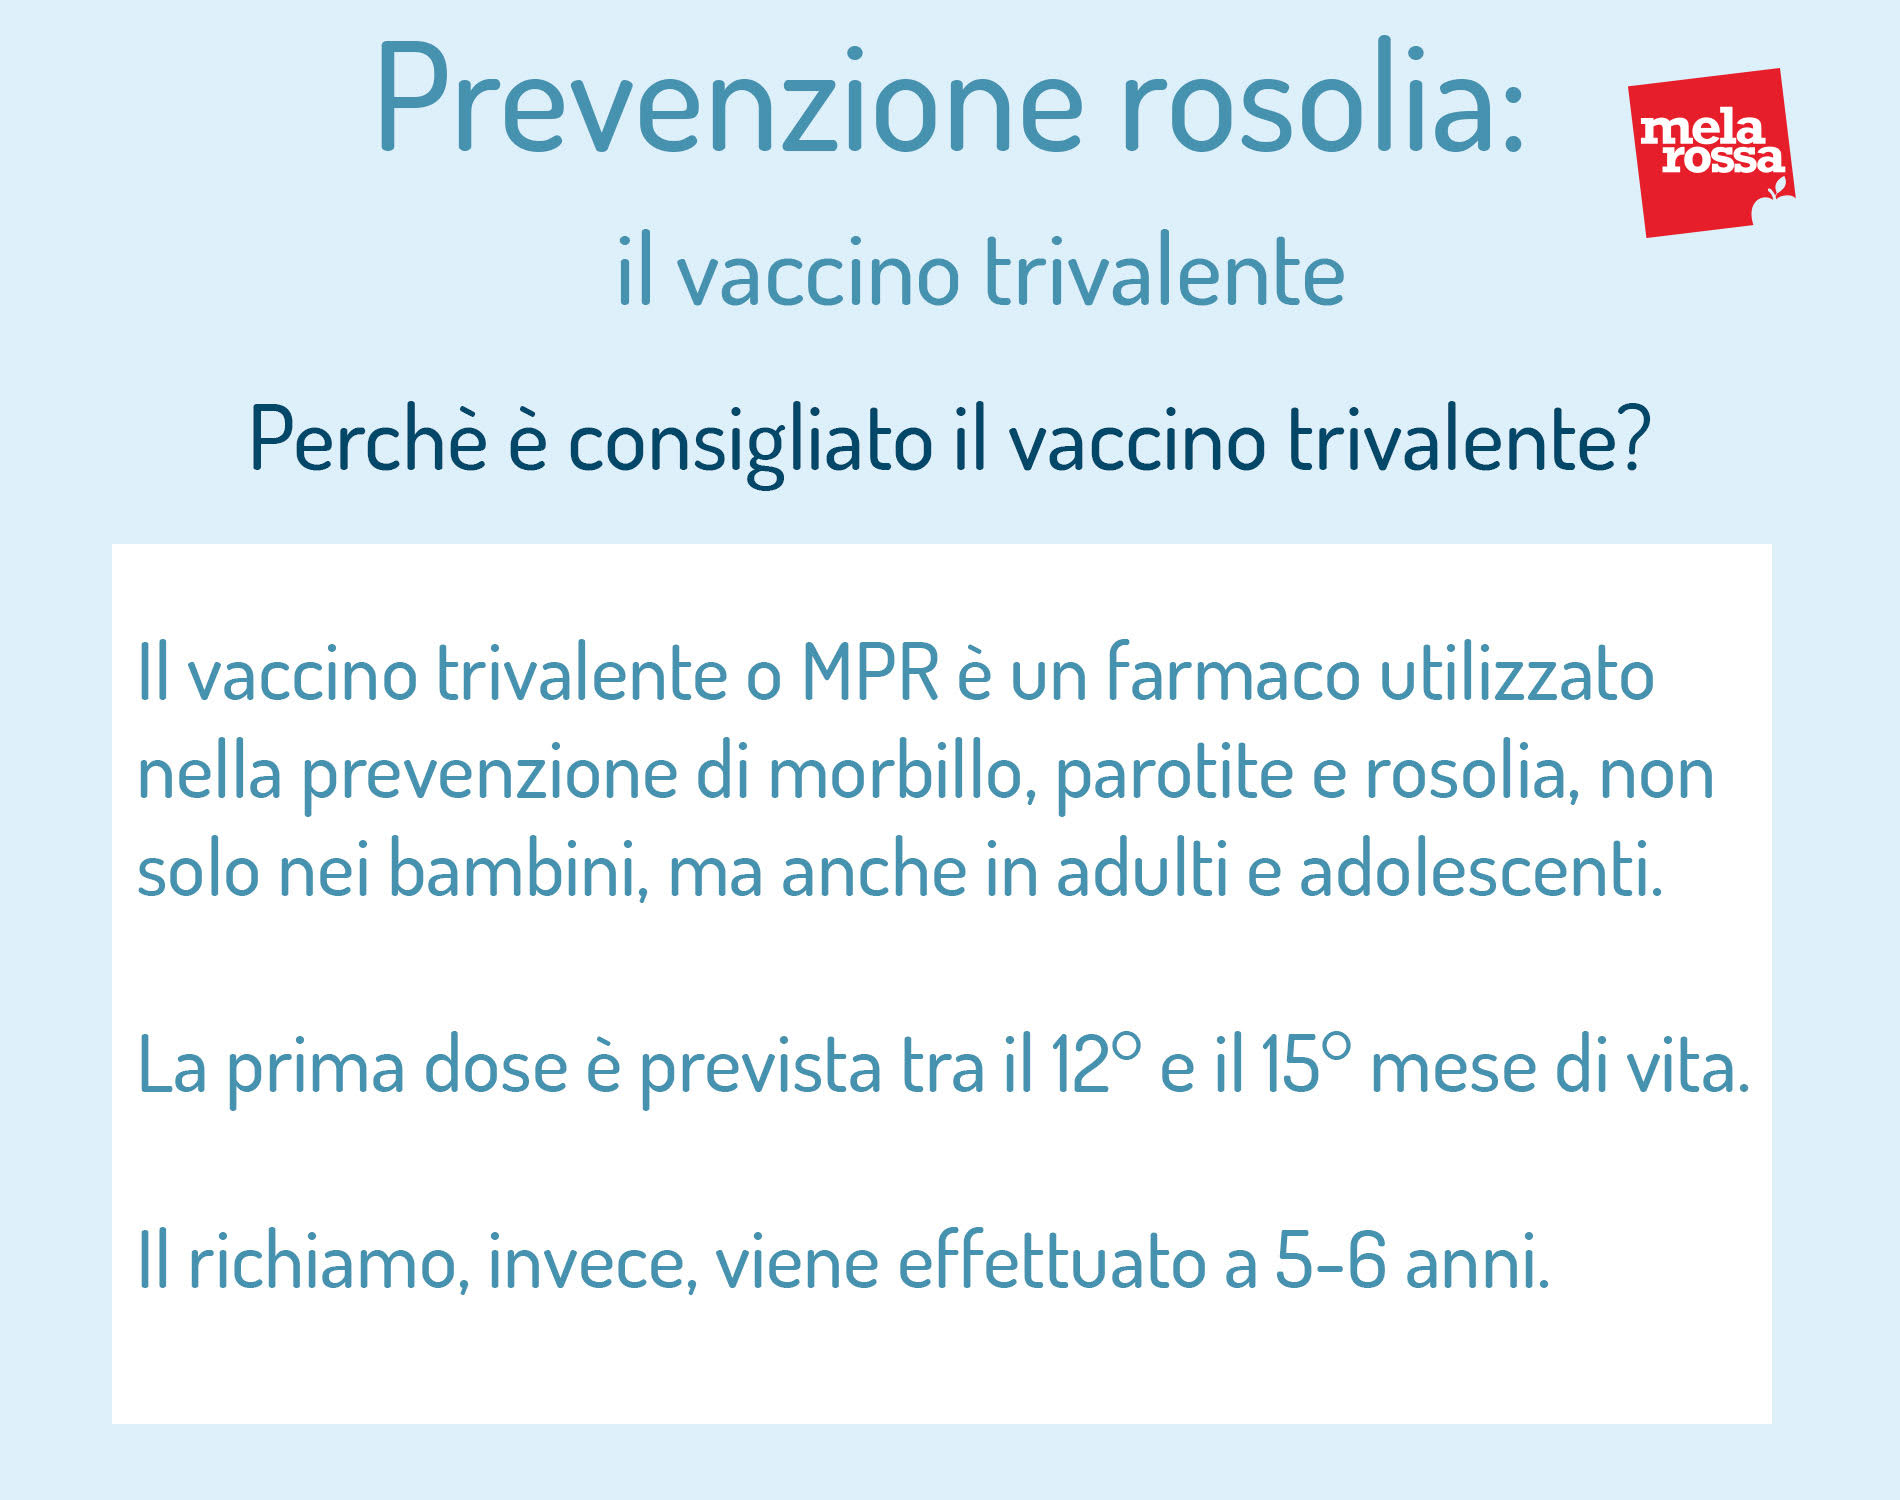 rosolia: prevenzione, perché è consigliato fare il vaccino trivalente e quando farlo